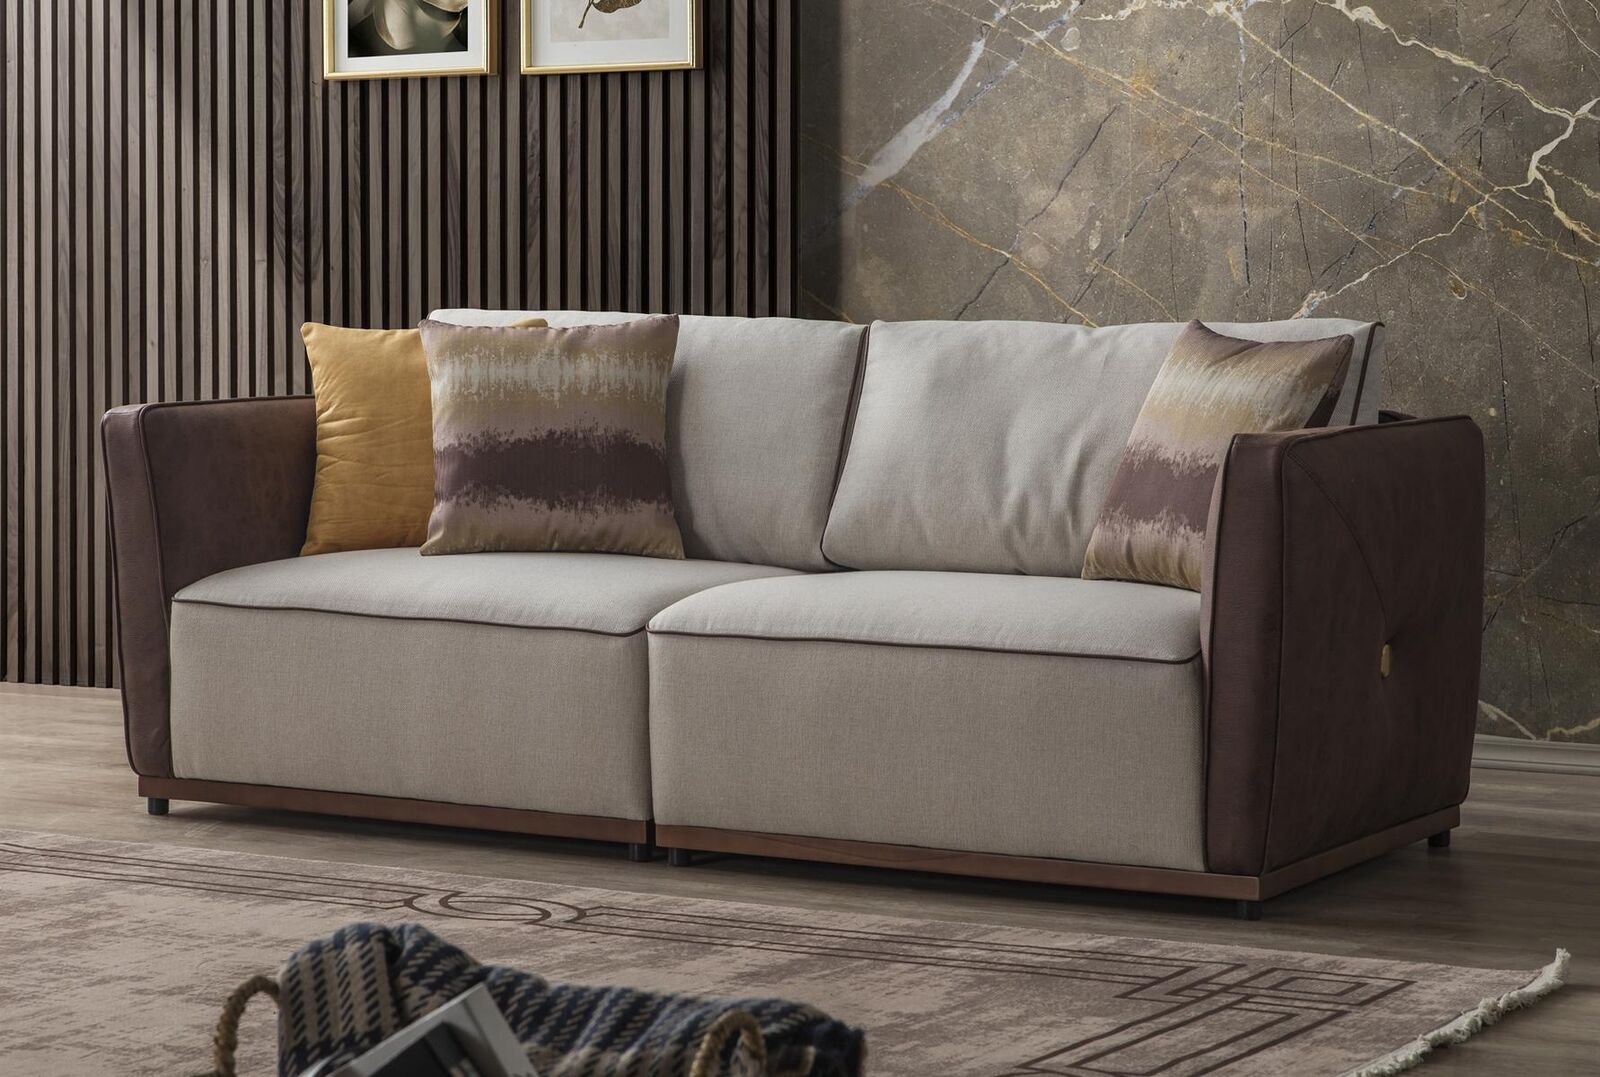 Zweisitzer Sofa Luxus 2 Sitzer Sofas Sitz Wohnzimmer Modern Polyester Stoff Neu